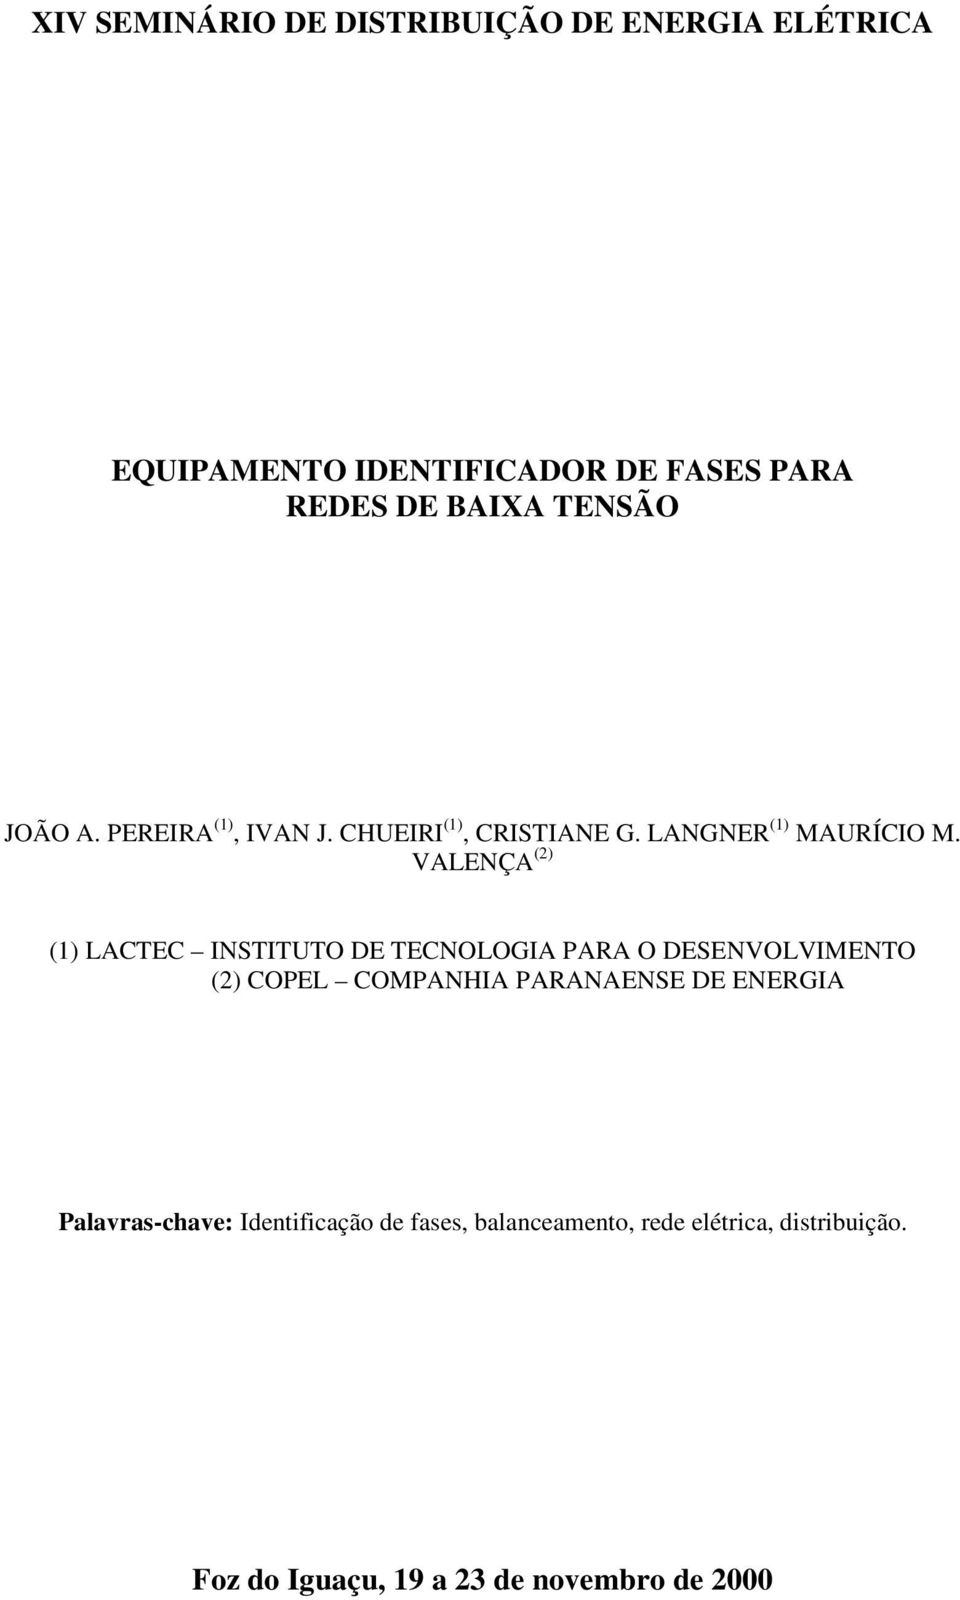 VALENÇA (2) (1) LACTEC INSTITUTO DE TECNOLOGIA PARA O DESENVOLVIMENTO (2) COPEL COMPANHIA PARANAENSE DE